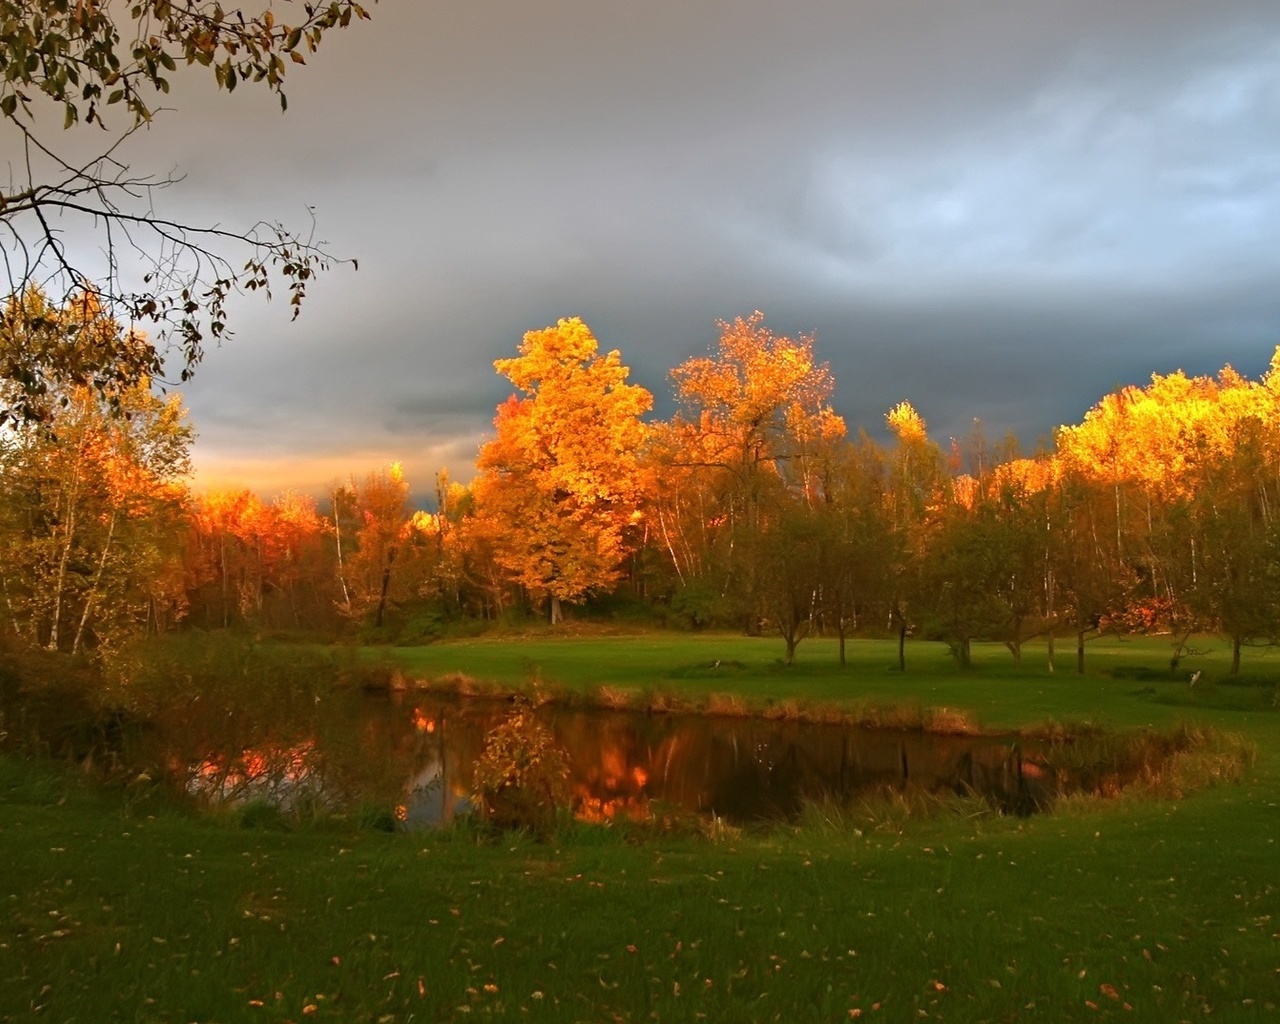 Обои трава, пасмурно, озеро, деревья, осень 238665 / Раздел: Пейзажи / Гудфон.рф (GoodFon)